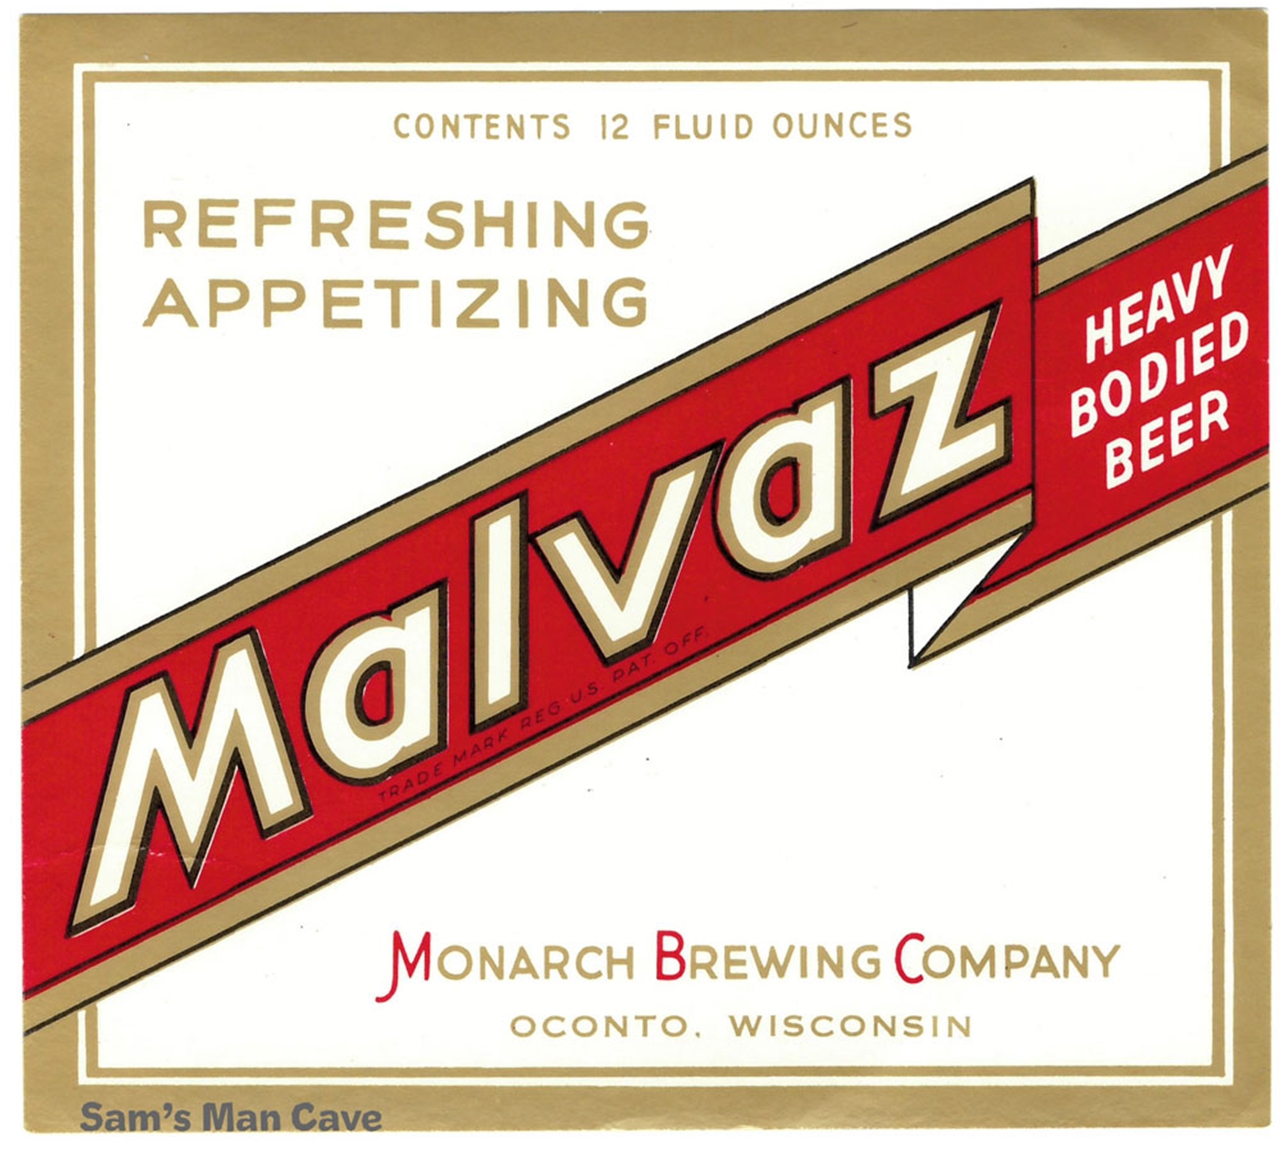 Malvaz Beer Label